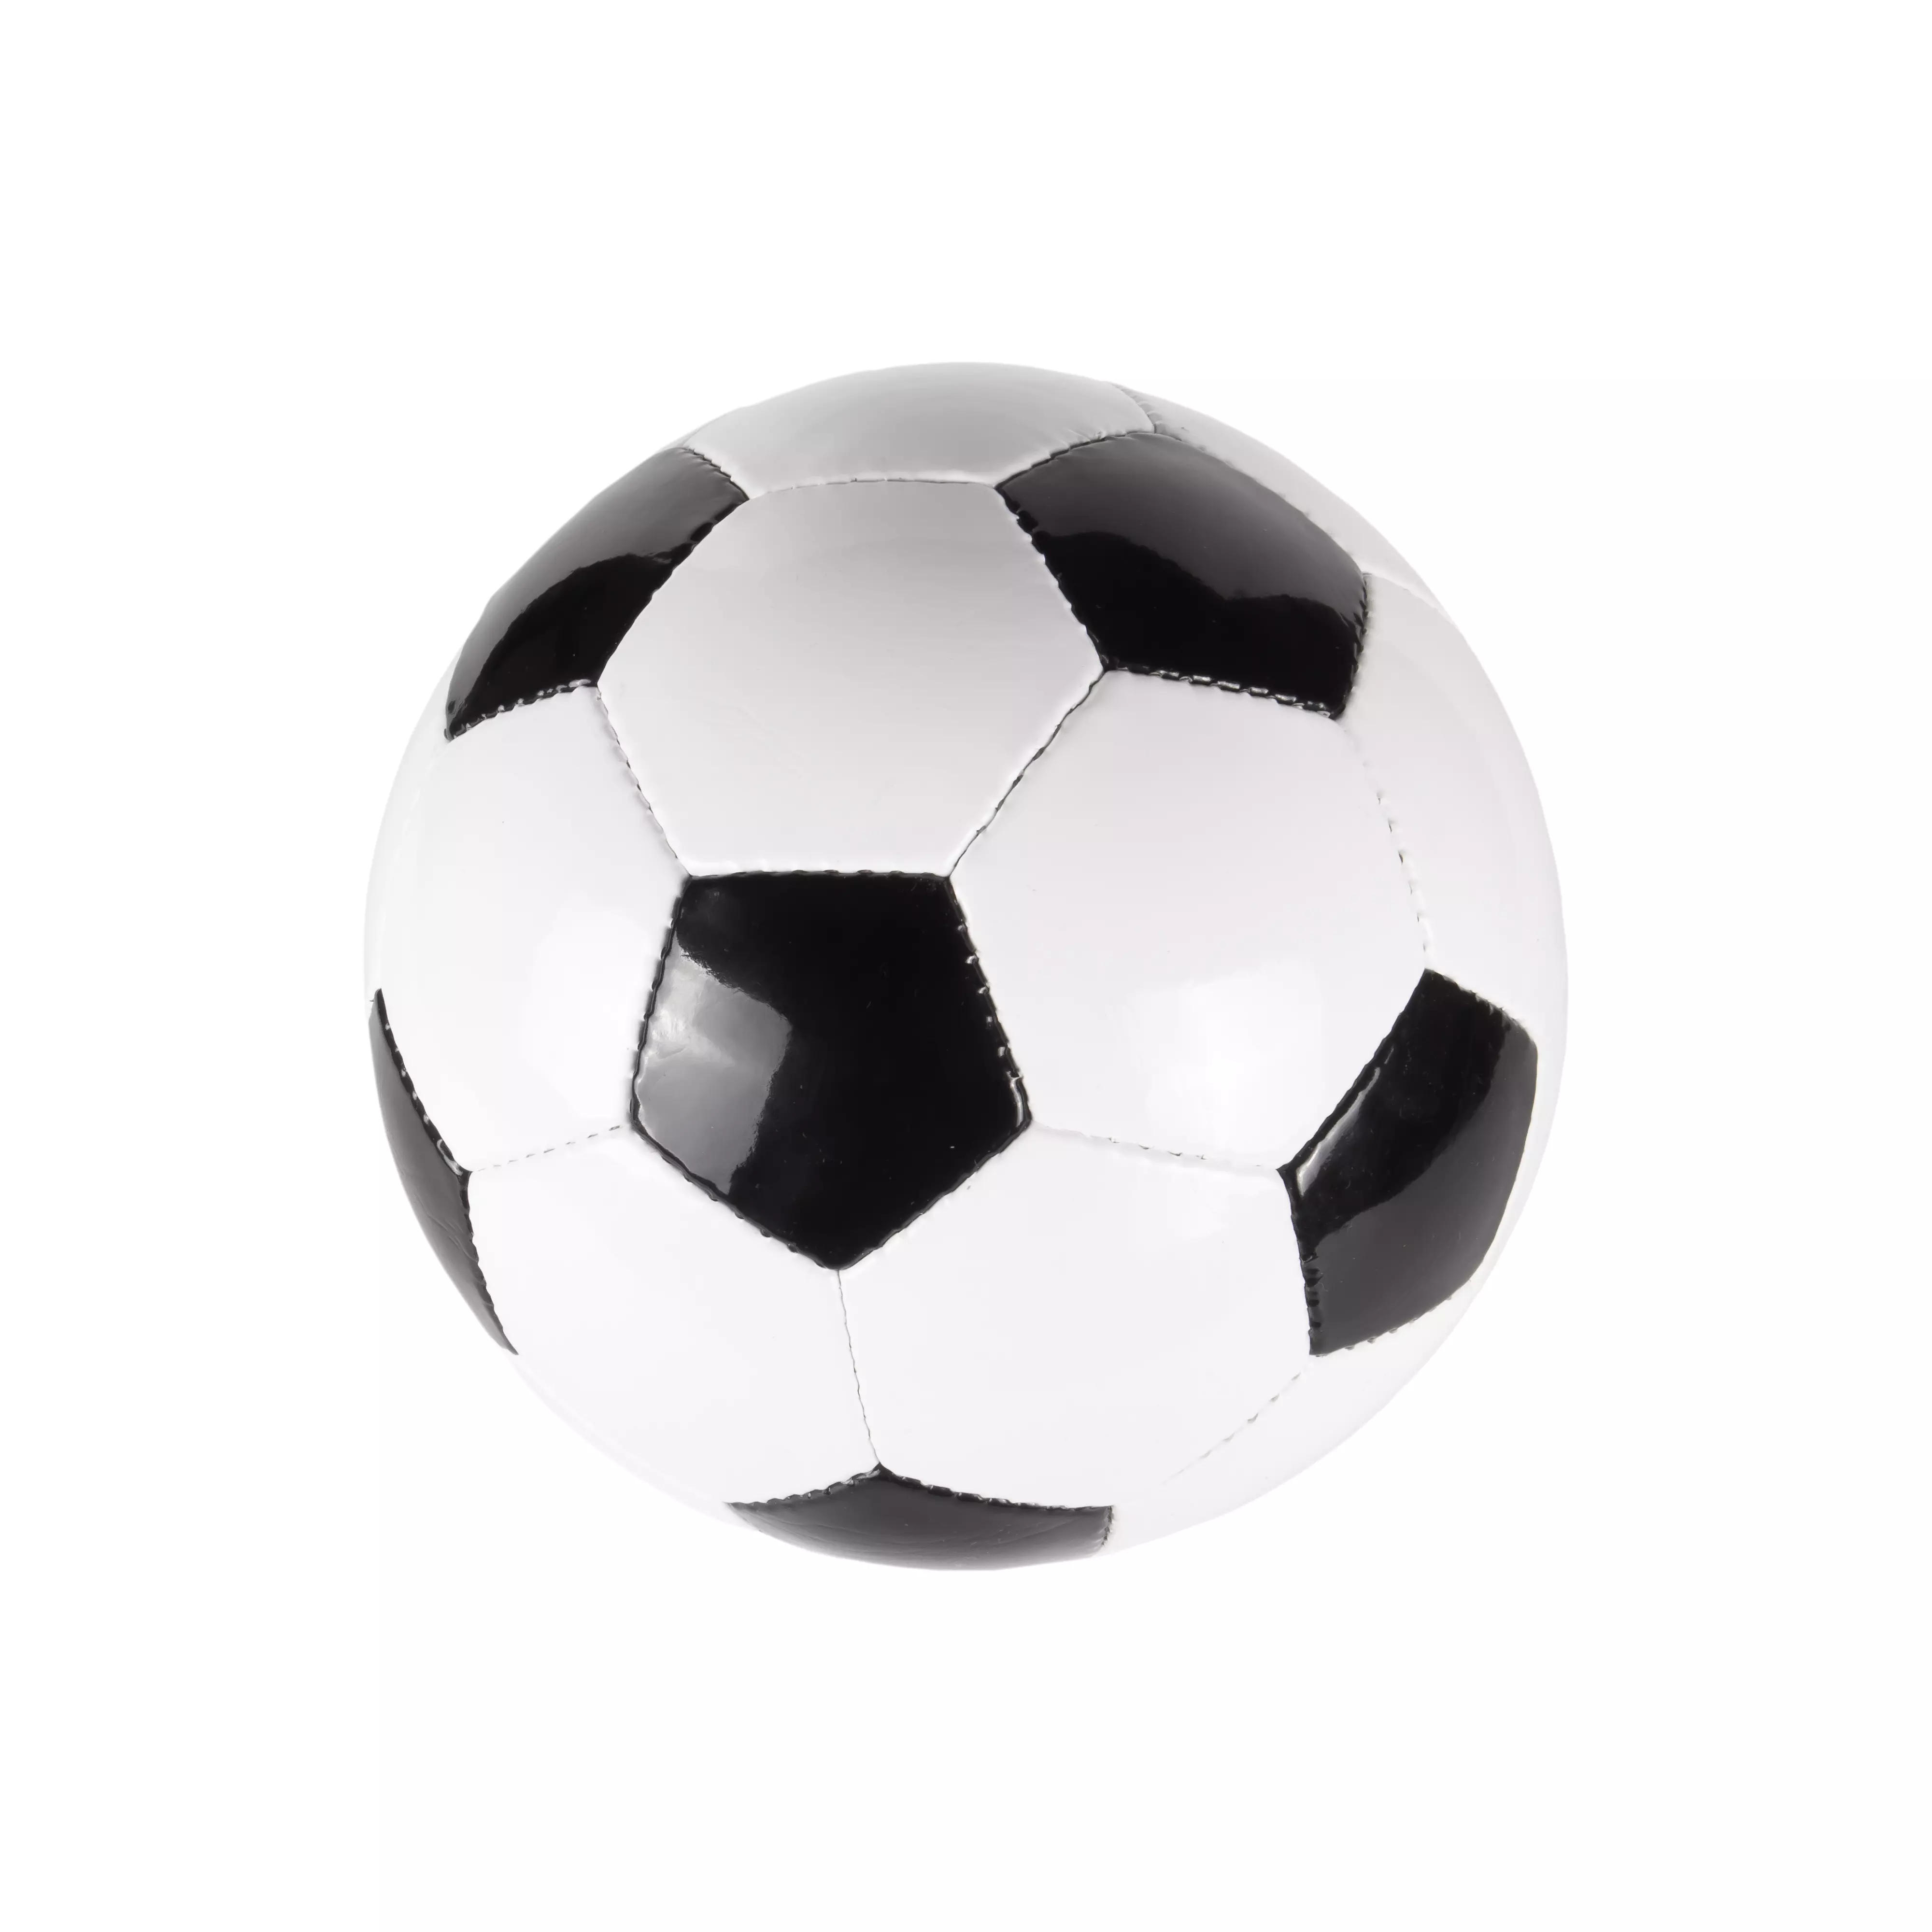 Ein klassischer Fußball zentral platziert auf einem reinweißen Hintergrund, einfaches und klares Design, ideal für Fußballfans und Sportbegeisterte bei flaggenmeer